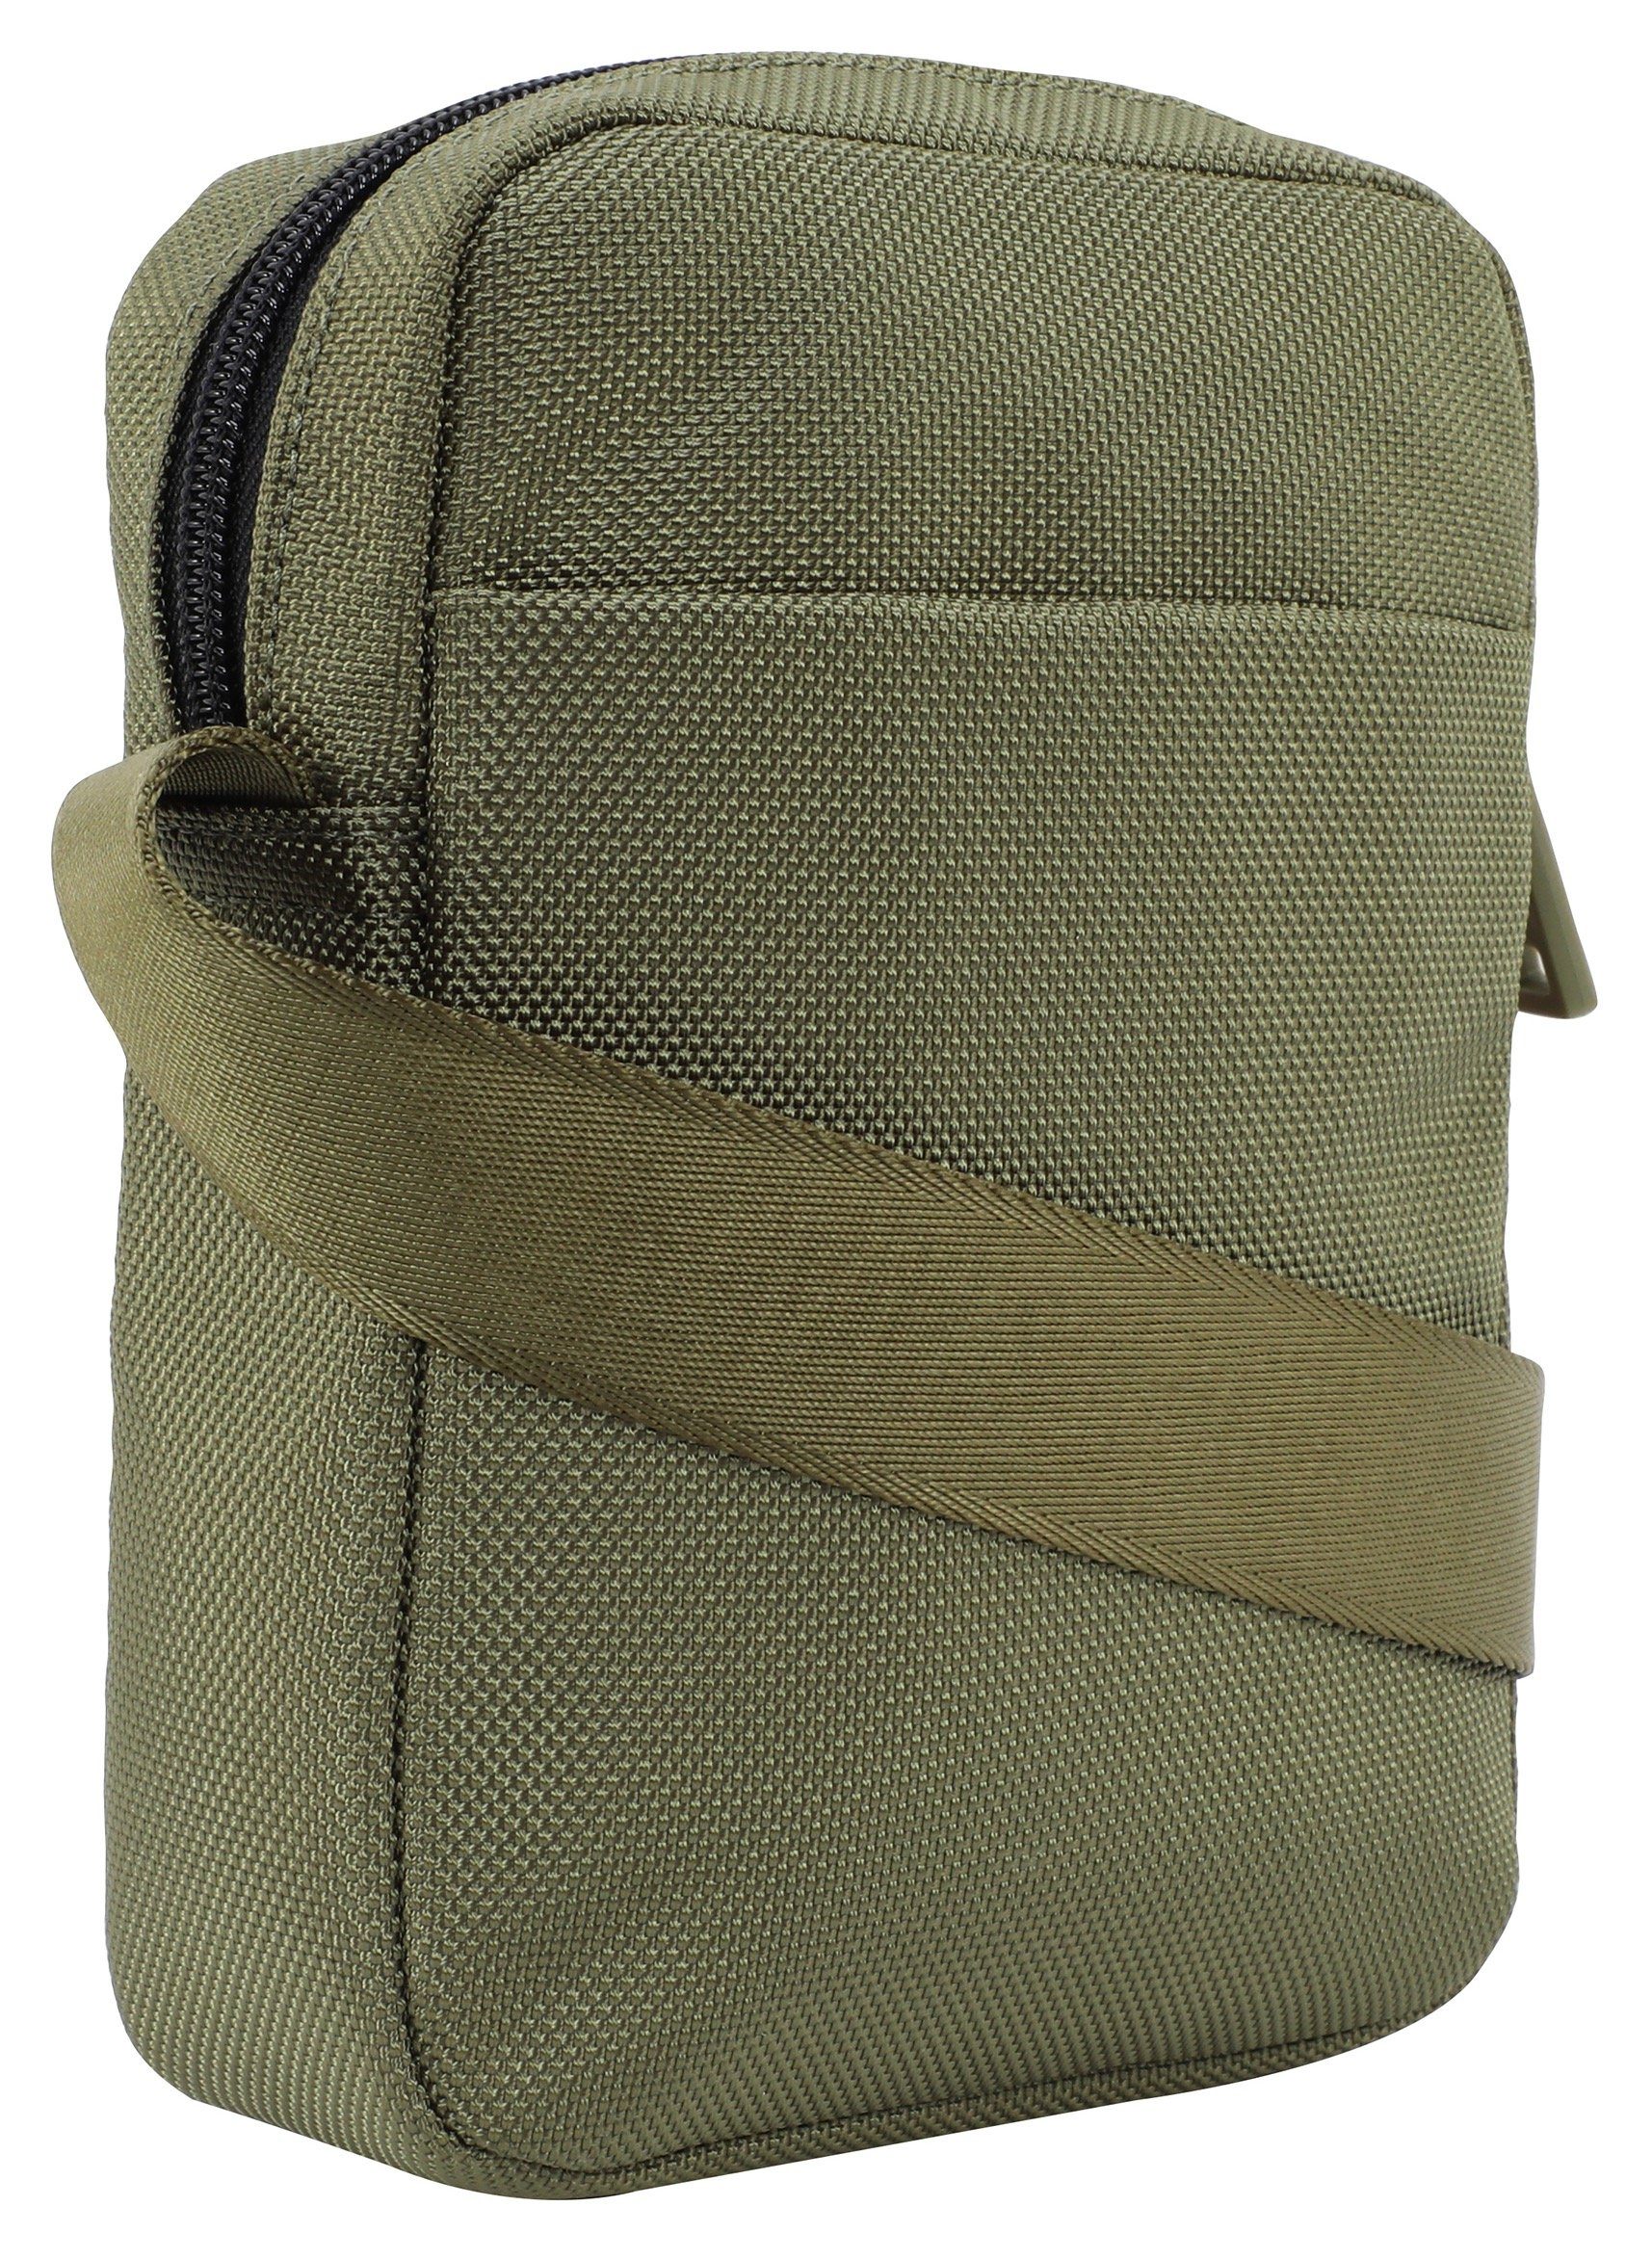 Joop Jeans Umhängetasche modica dunkelgrün rafael praktischen im xsvz, Design shoulderbag